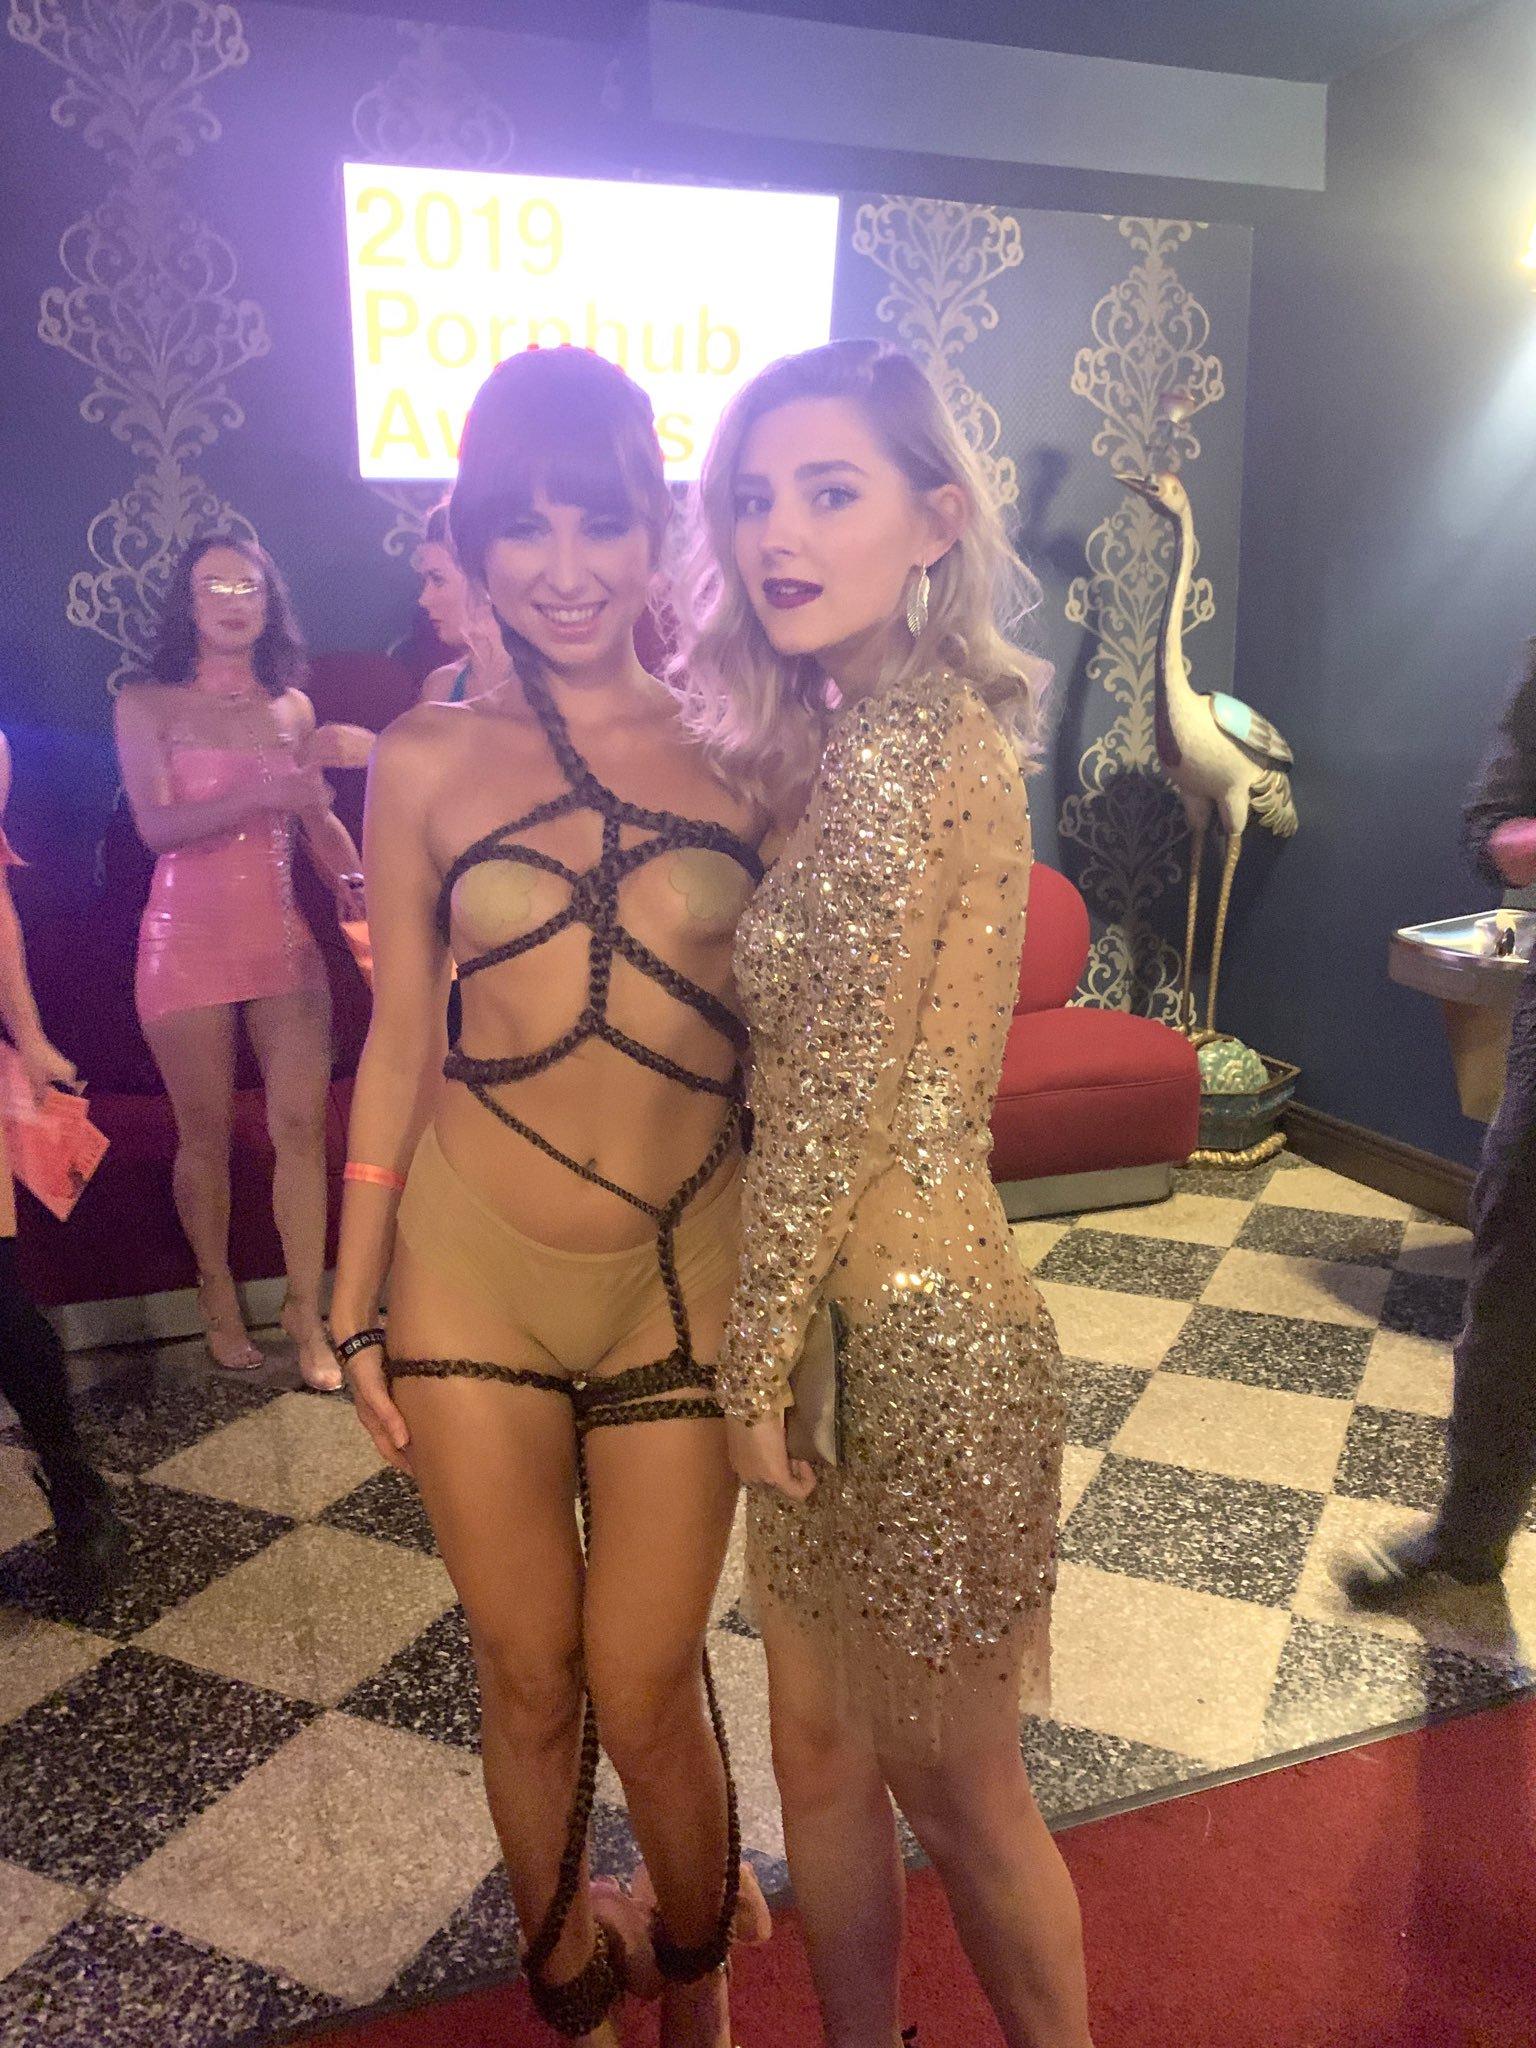 2019 Hd Xx - Riley Reid in 2019 Pornhub awards Porn Pic - EPORNER